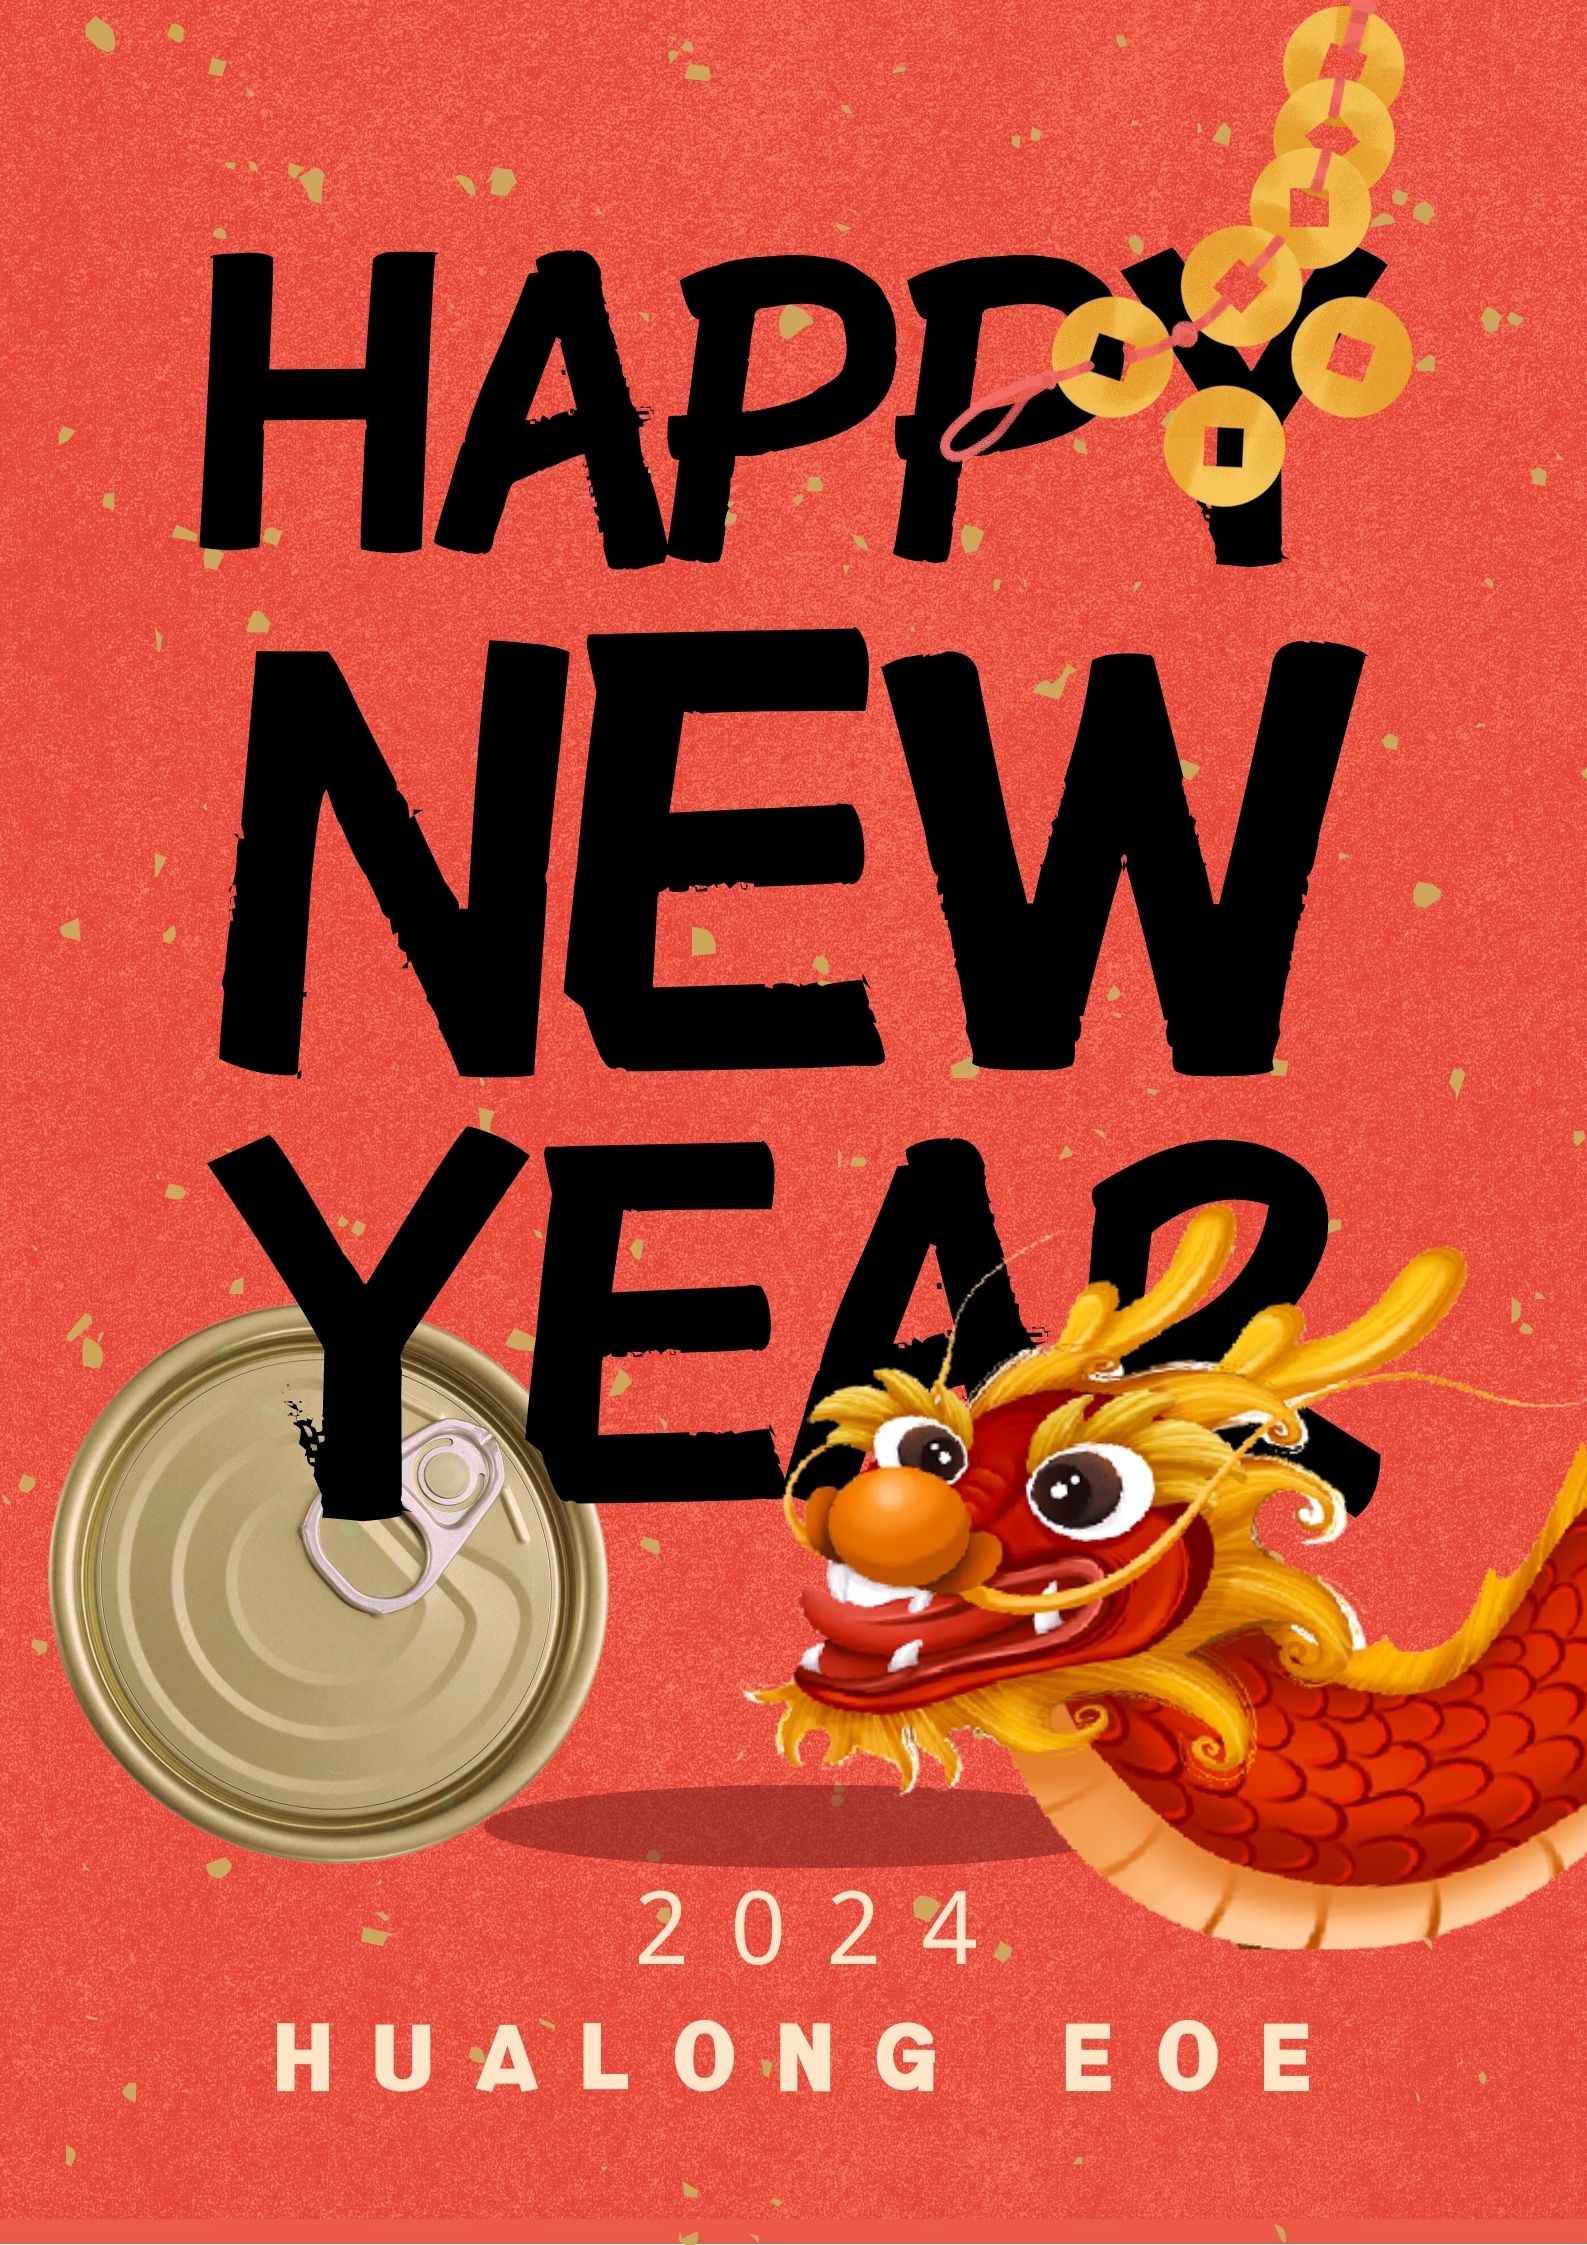 Hualong EOE Šťastný nový rok!